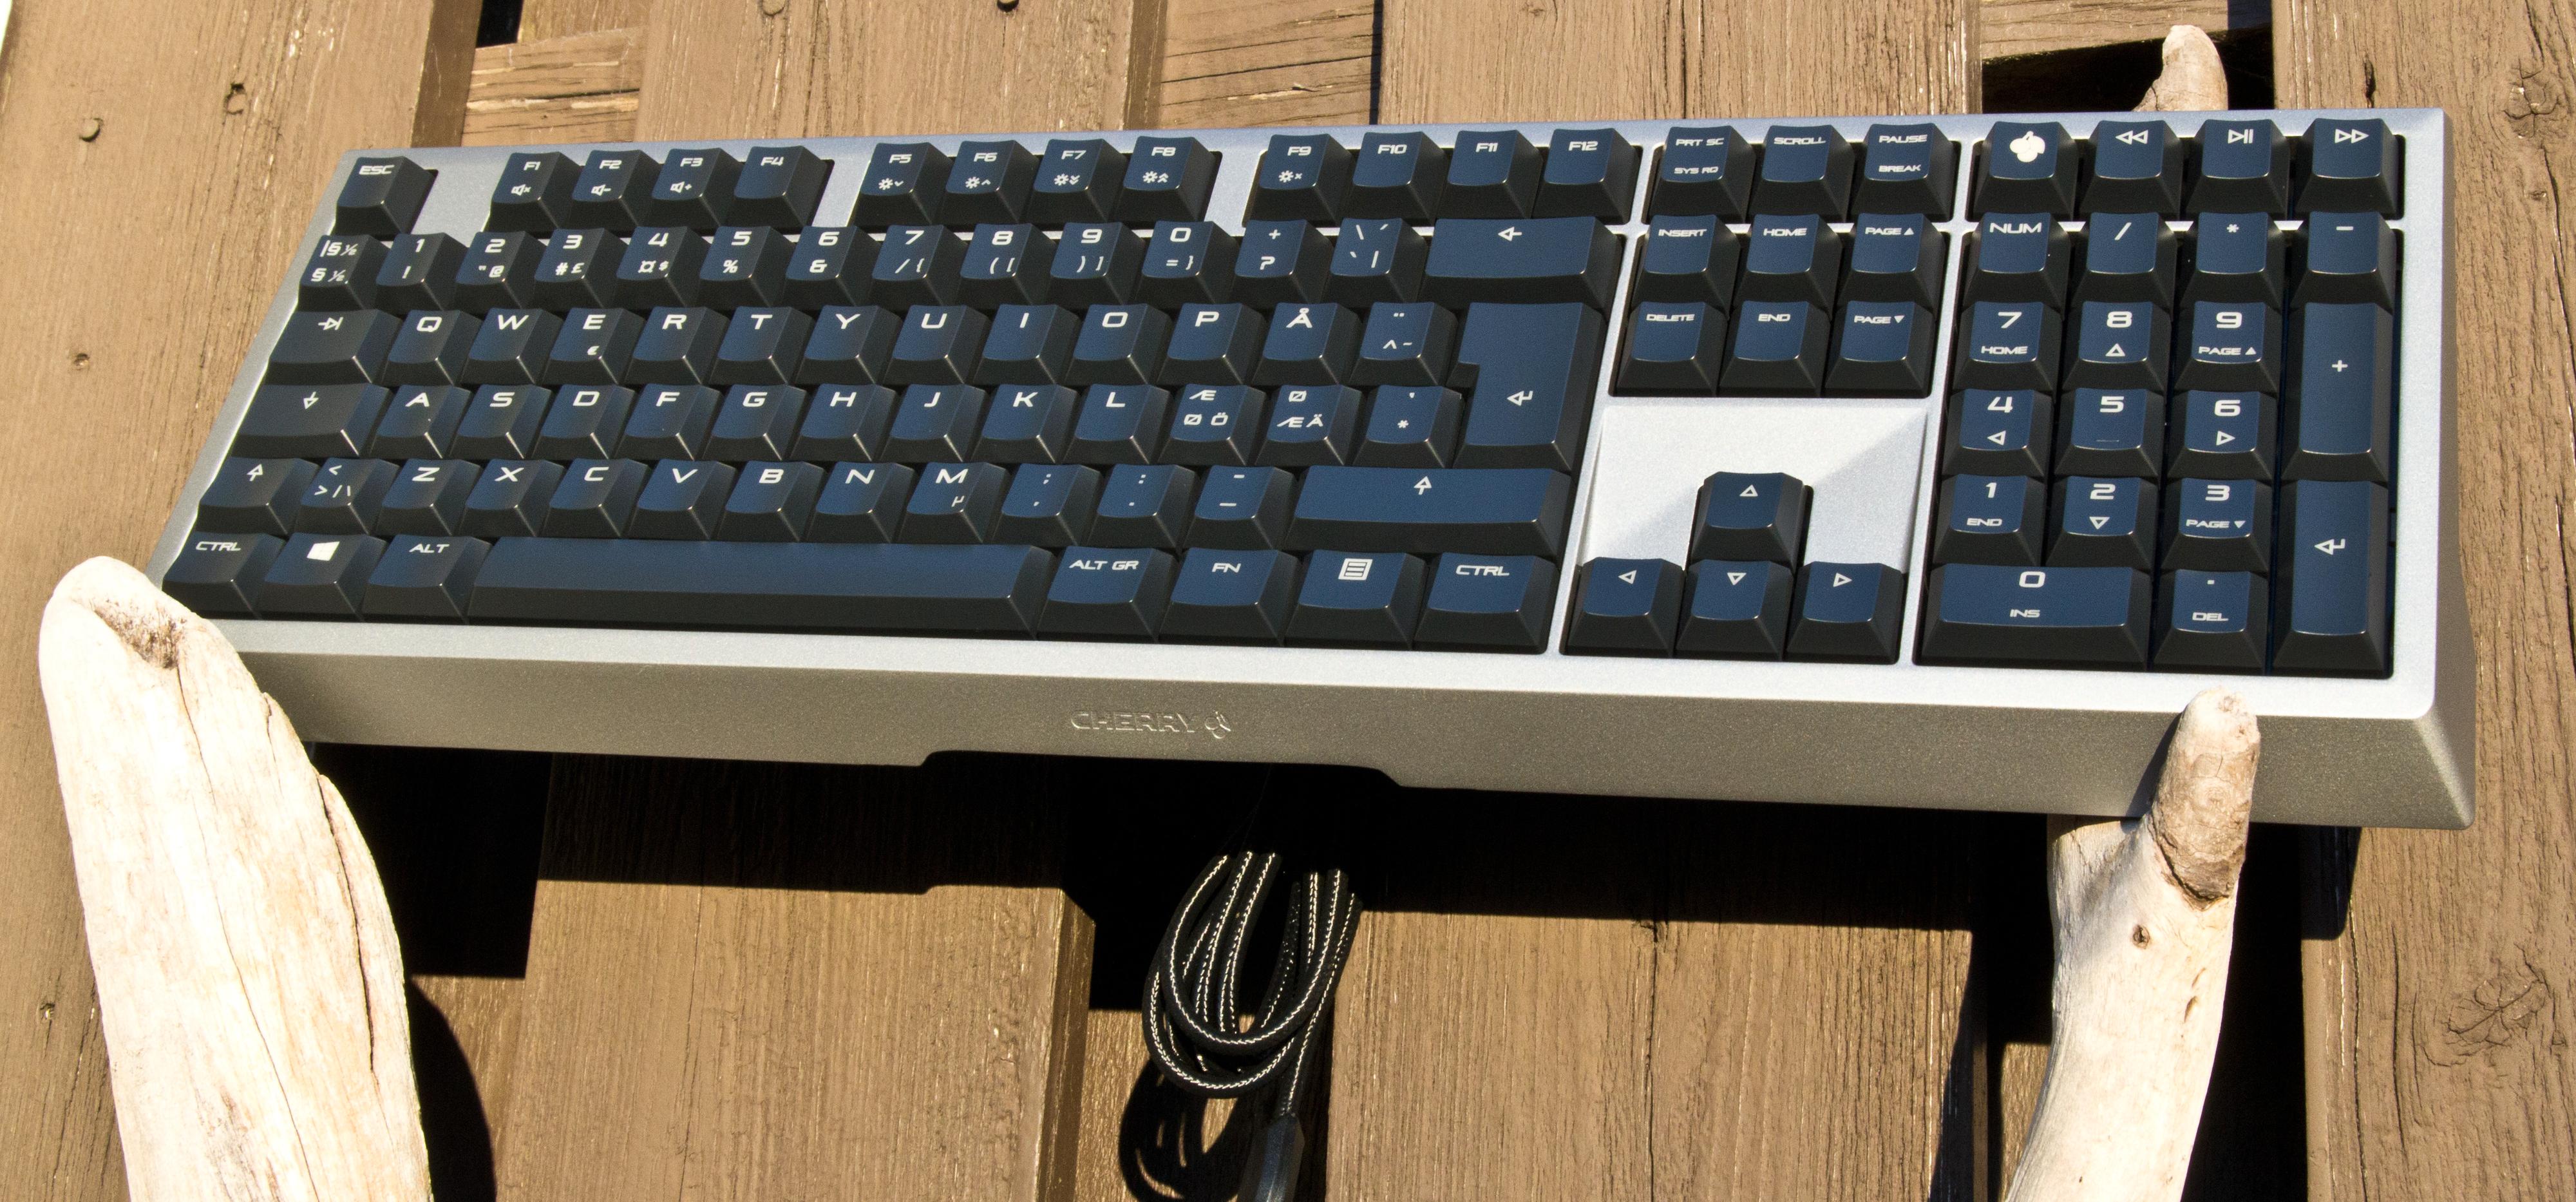 MX Board 6.0 er et strøkent tastatur. Foto: Rolf B. Wegner, Tek.no